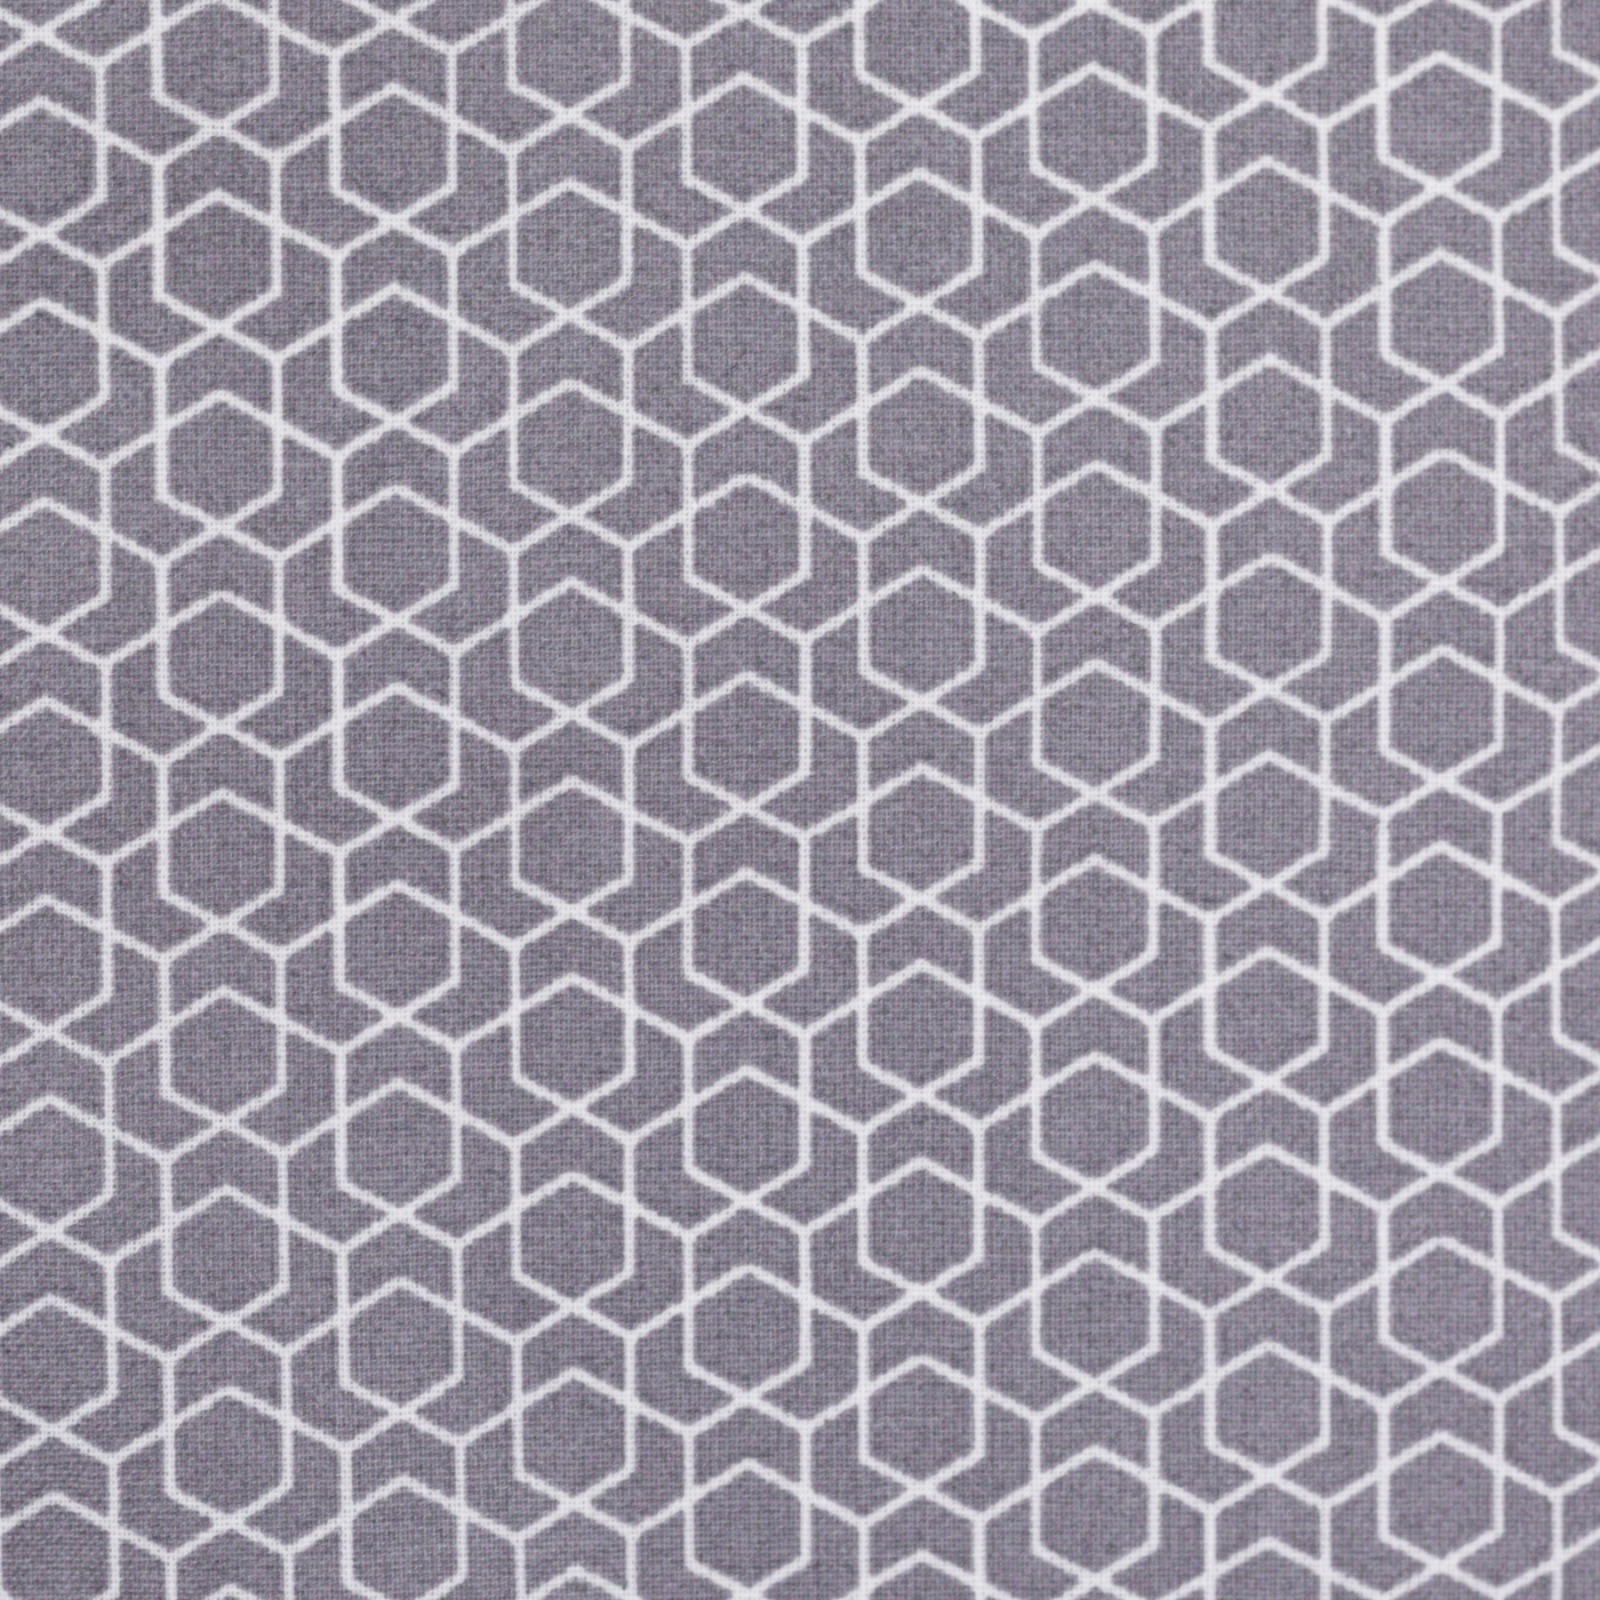 05m Beschichtete Baumwolle Leonie geometisches Muster grau weiß 2